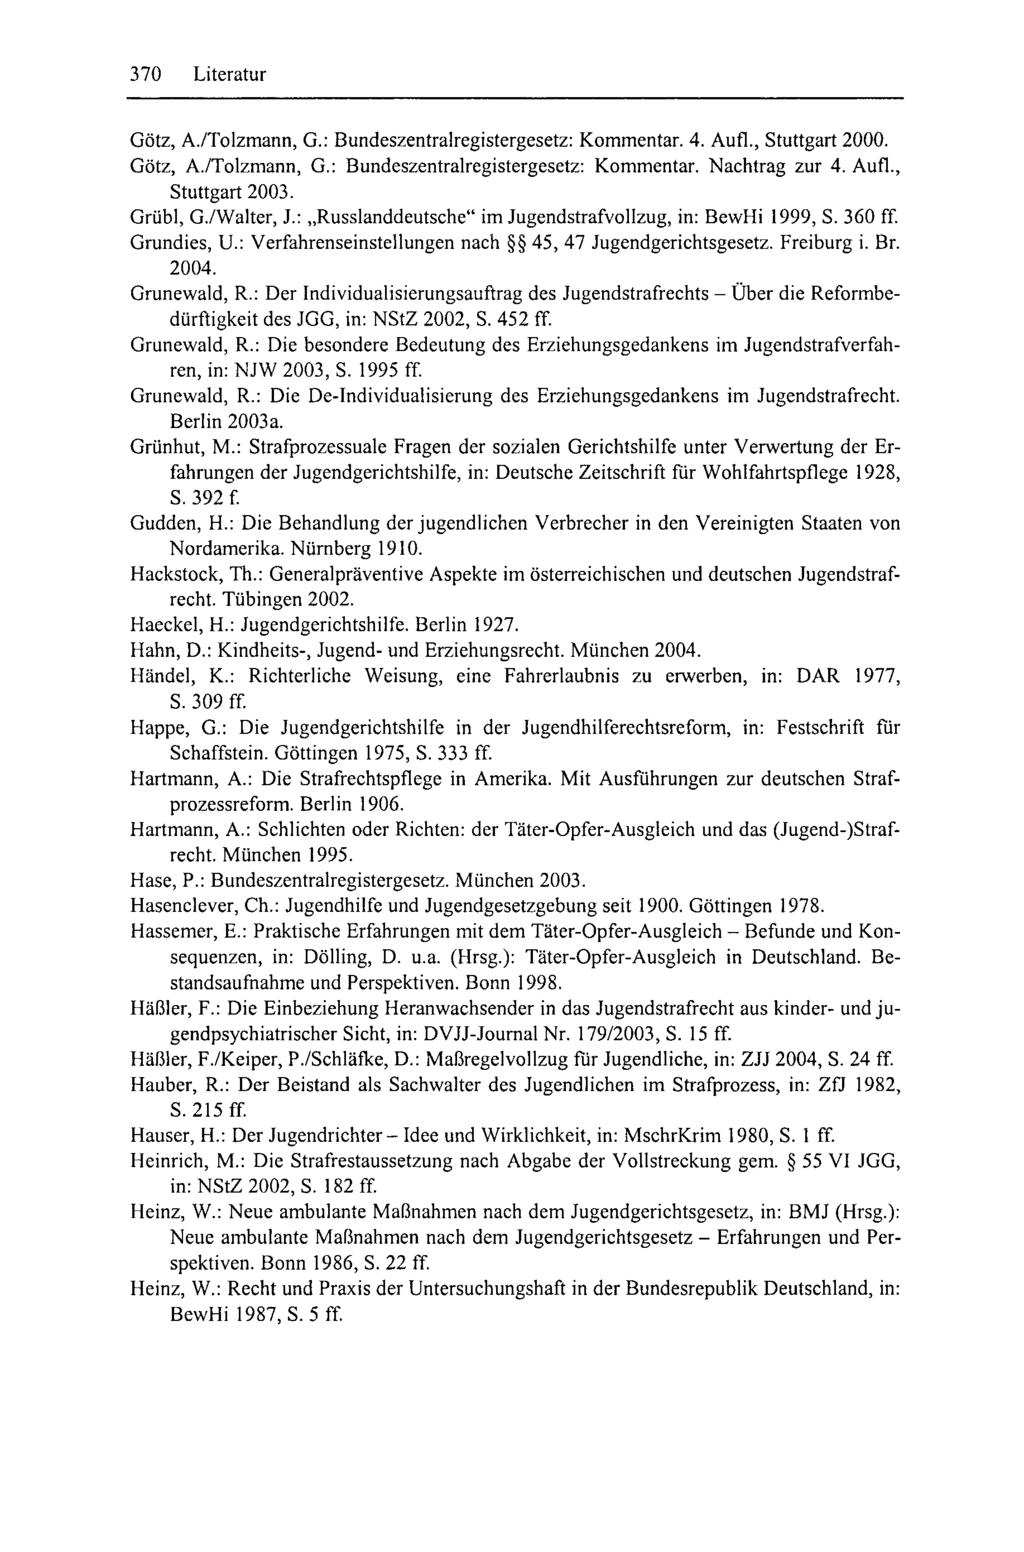 370 Literatur Götz, A./Tolzmann, G.: Bundeszentralregistergesetz: Kommentar. 4. Aufl., Stuttgart 2000. Götz, A./Tolzmann, G.: Bundeszentralregistergesetz: Kommentar. Nachtrag zur 4. Aufl., Stuttgart 2003.